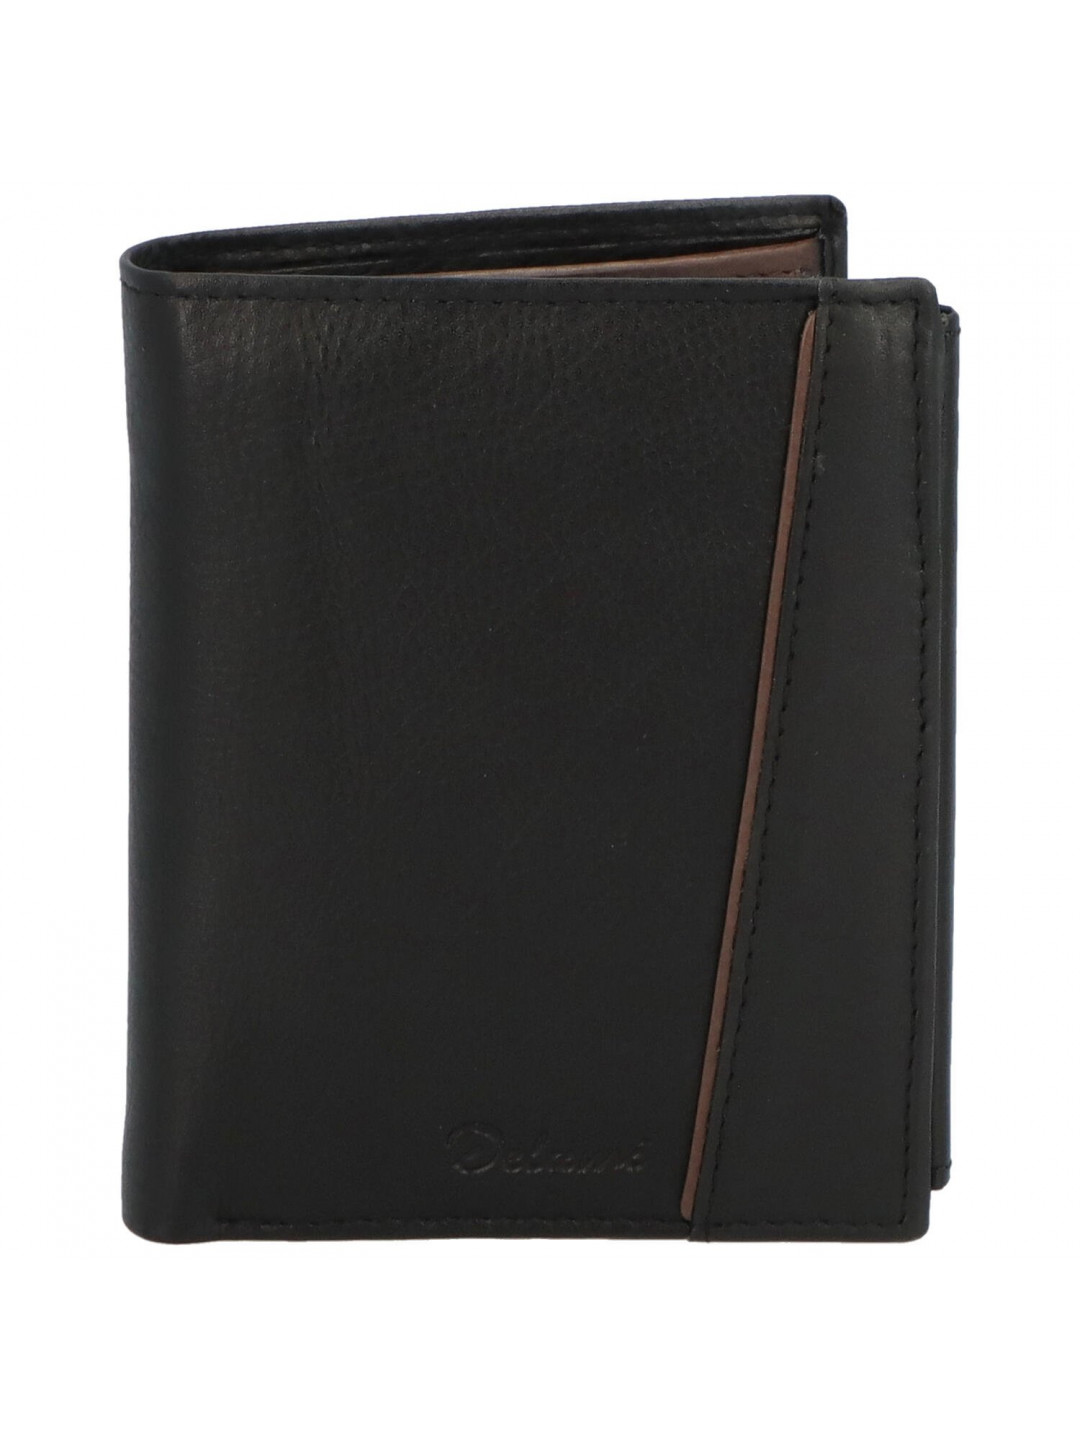 Pánská kožená peněženka s výrazným prošíváním Tommaso černá hnědá